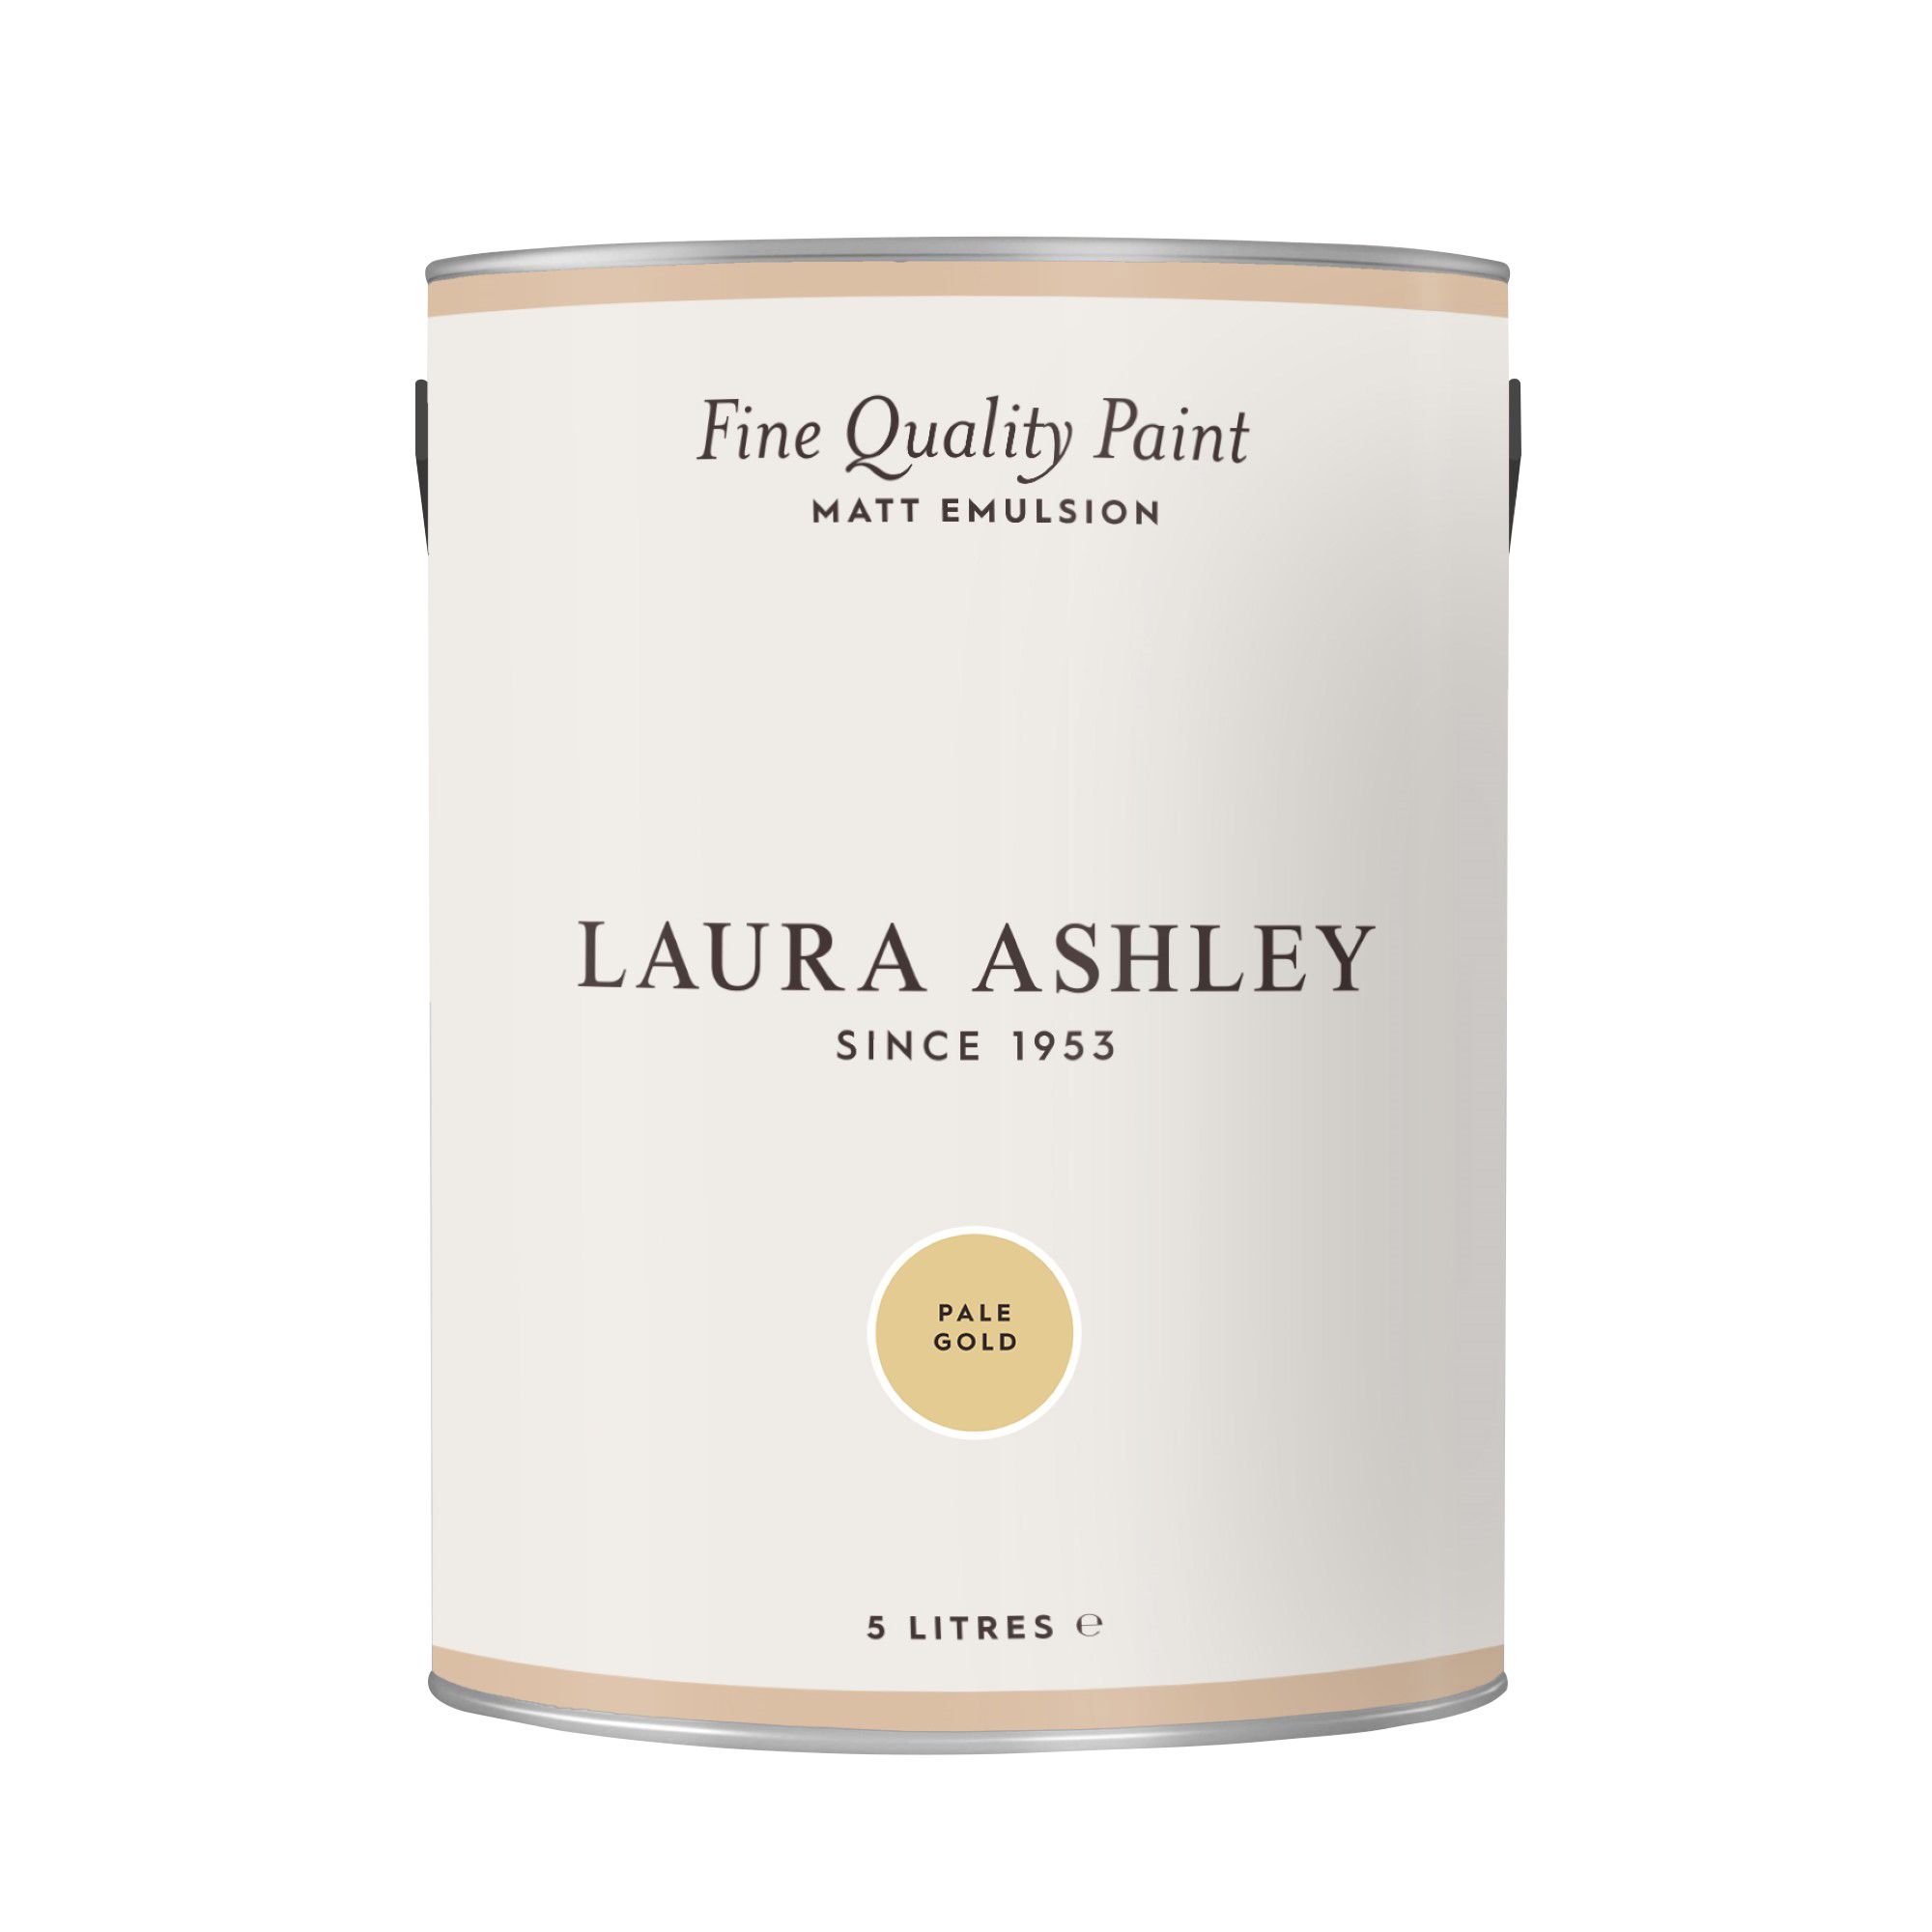 Laura Ashley Pale Gold Matt Emulsion paint, 5L